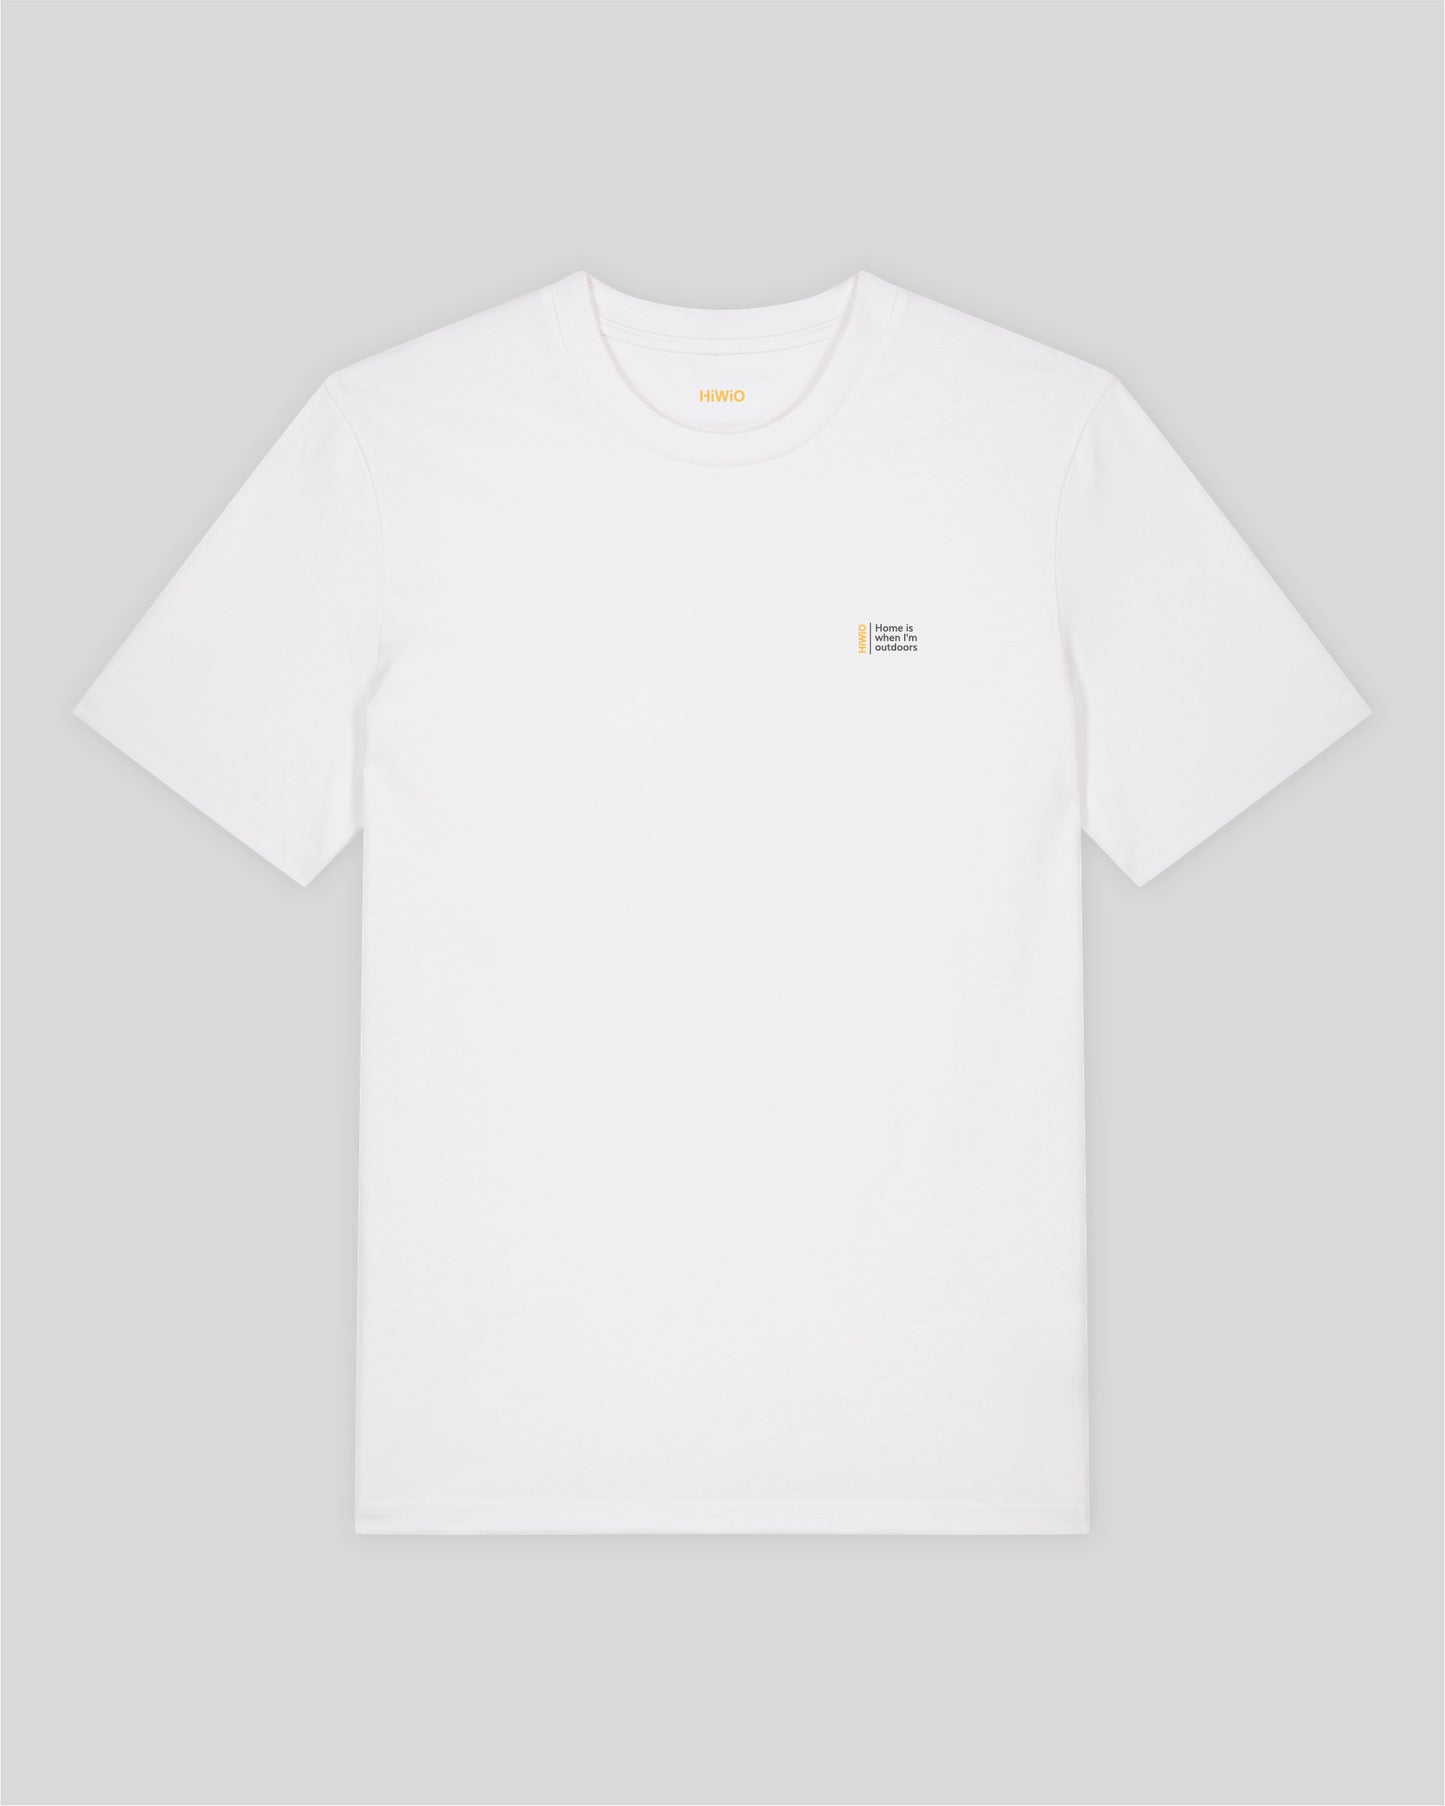 Peitler Topo - Herren/Unisex-T-Shirt aus hochwertiger Bio-Baumwolle